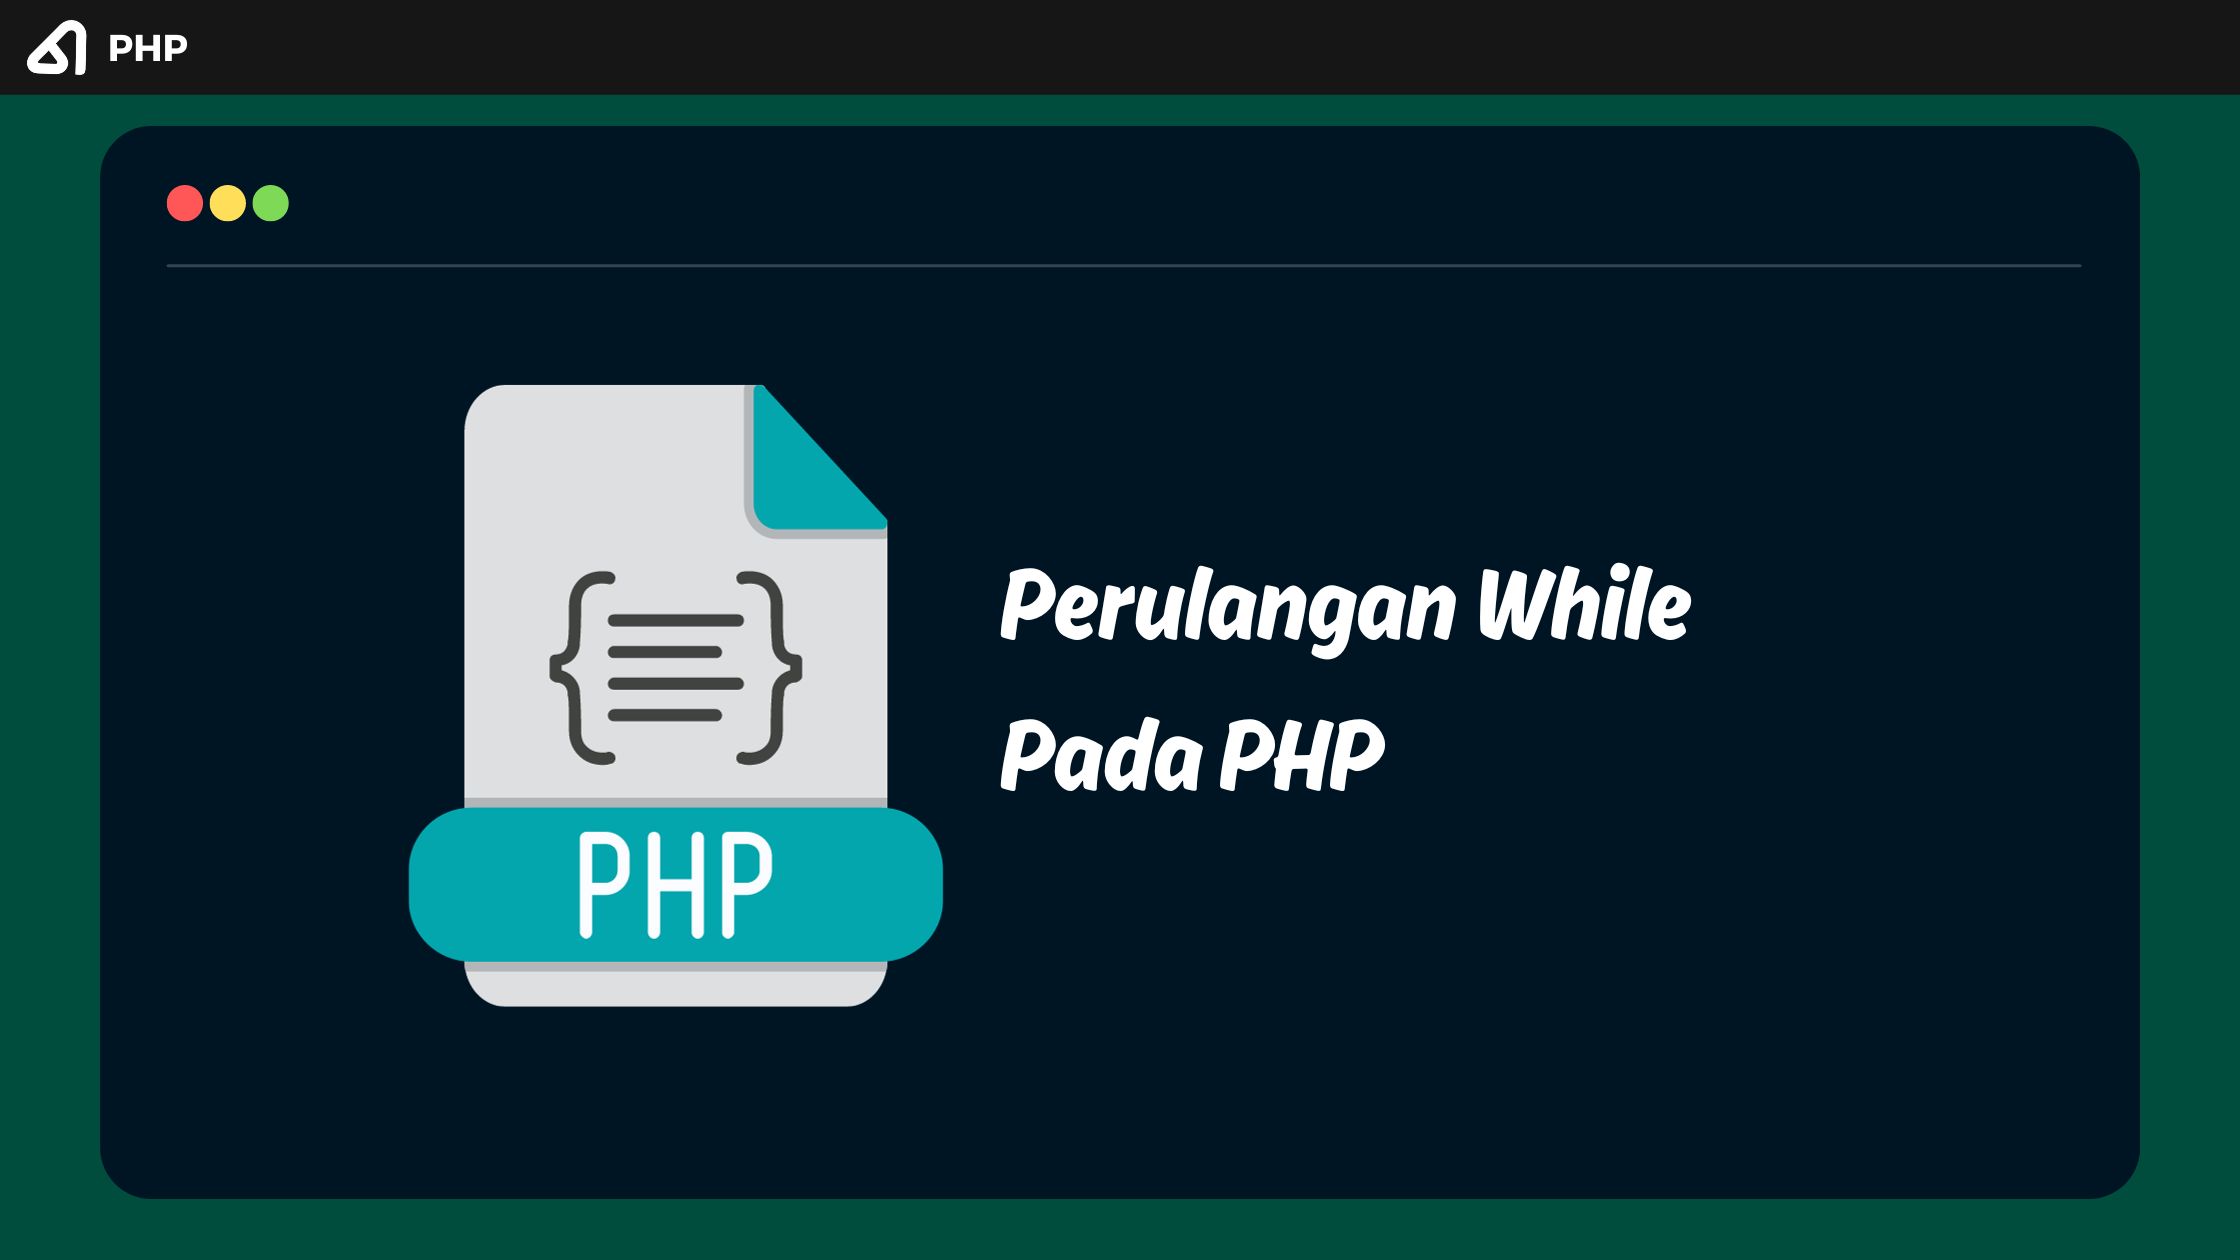 Perulangan While Pada PHP